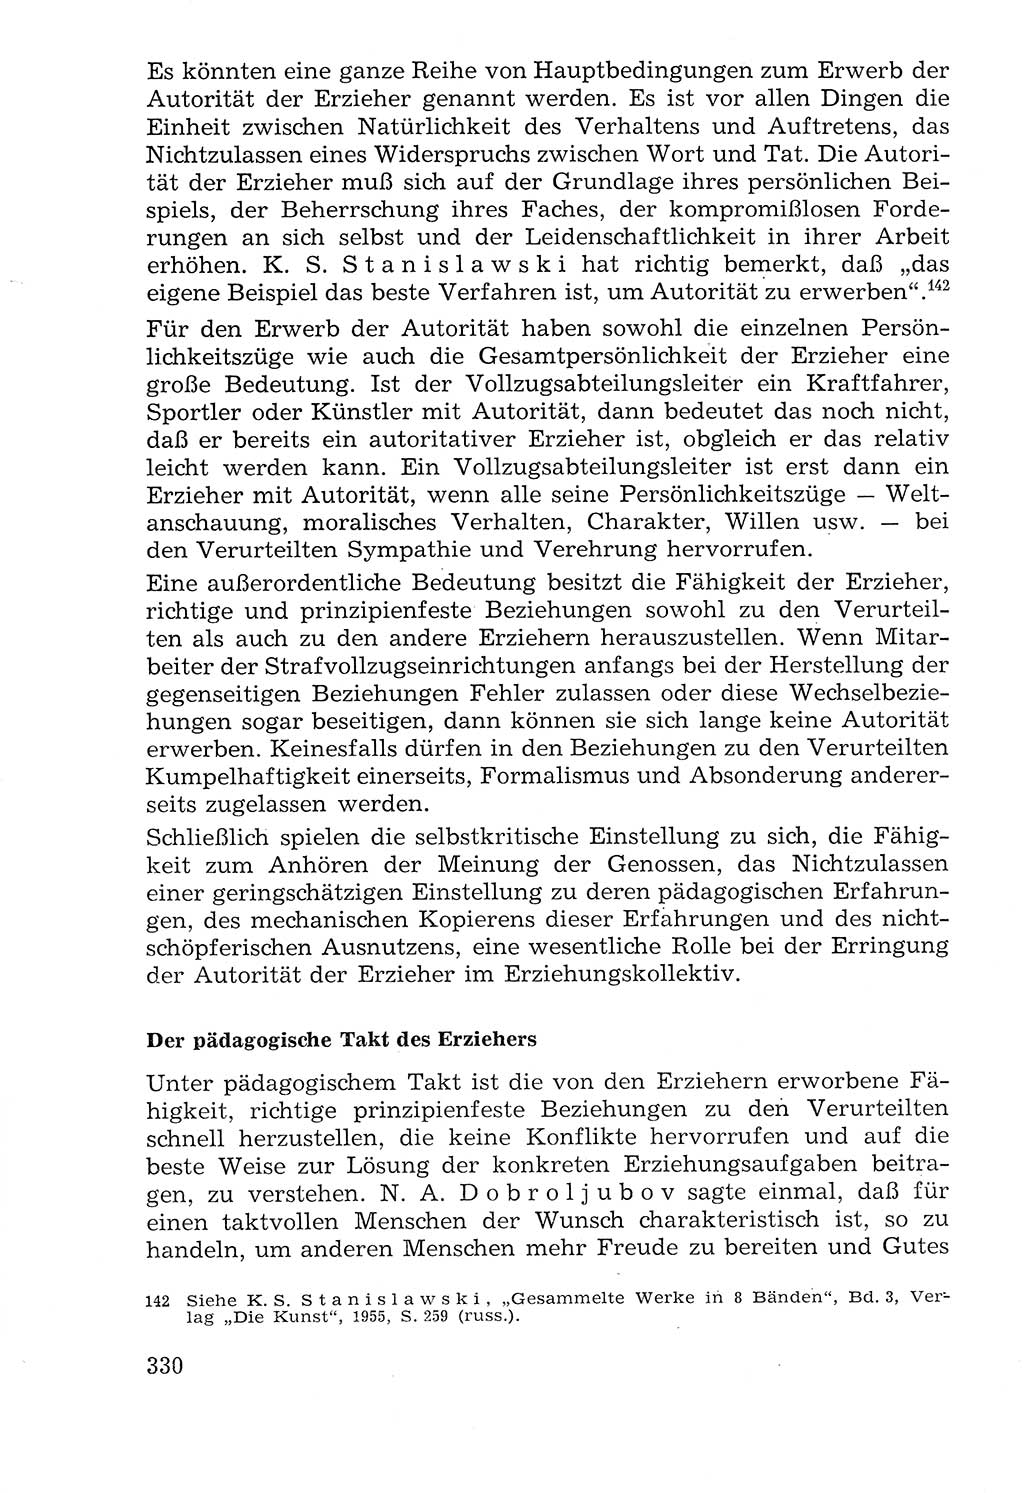 Lehrbuch der Strafvollzugspädagogik [Deutsche Demokratische Republik (DDR)] 1969, Seite 330 (Lb. SV-Pd. DDR 1969, S. 330)